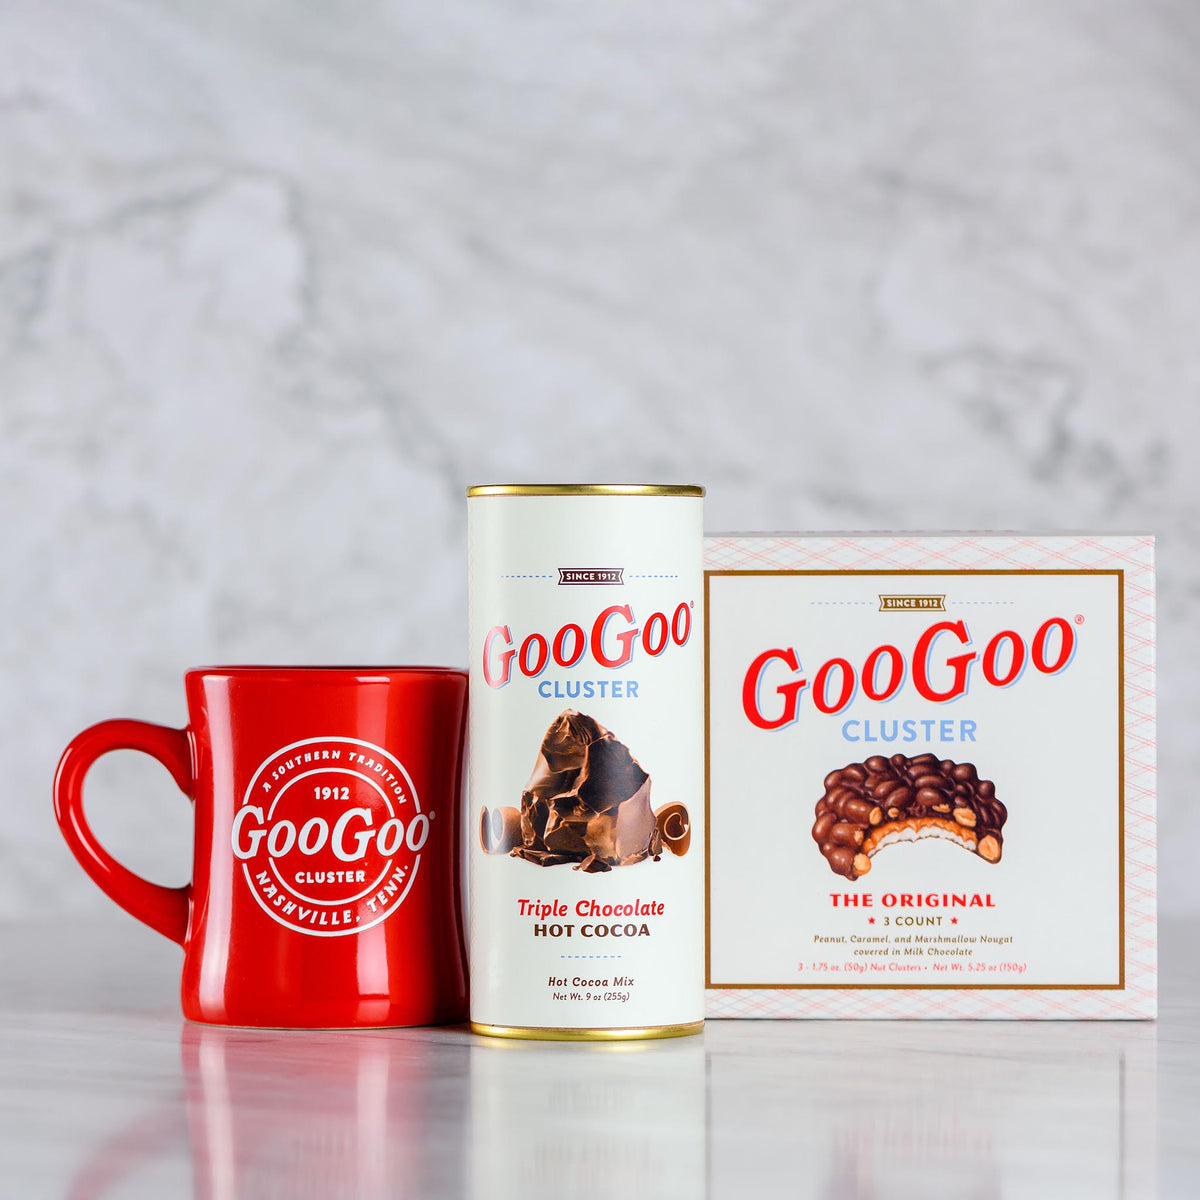 Goo Goo Nut Clusters, The Original - 3 pack, 1.75 oz clusters